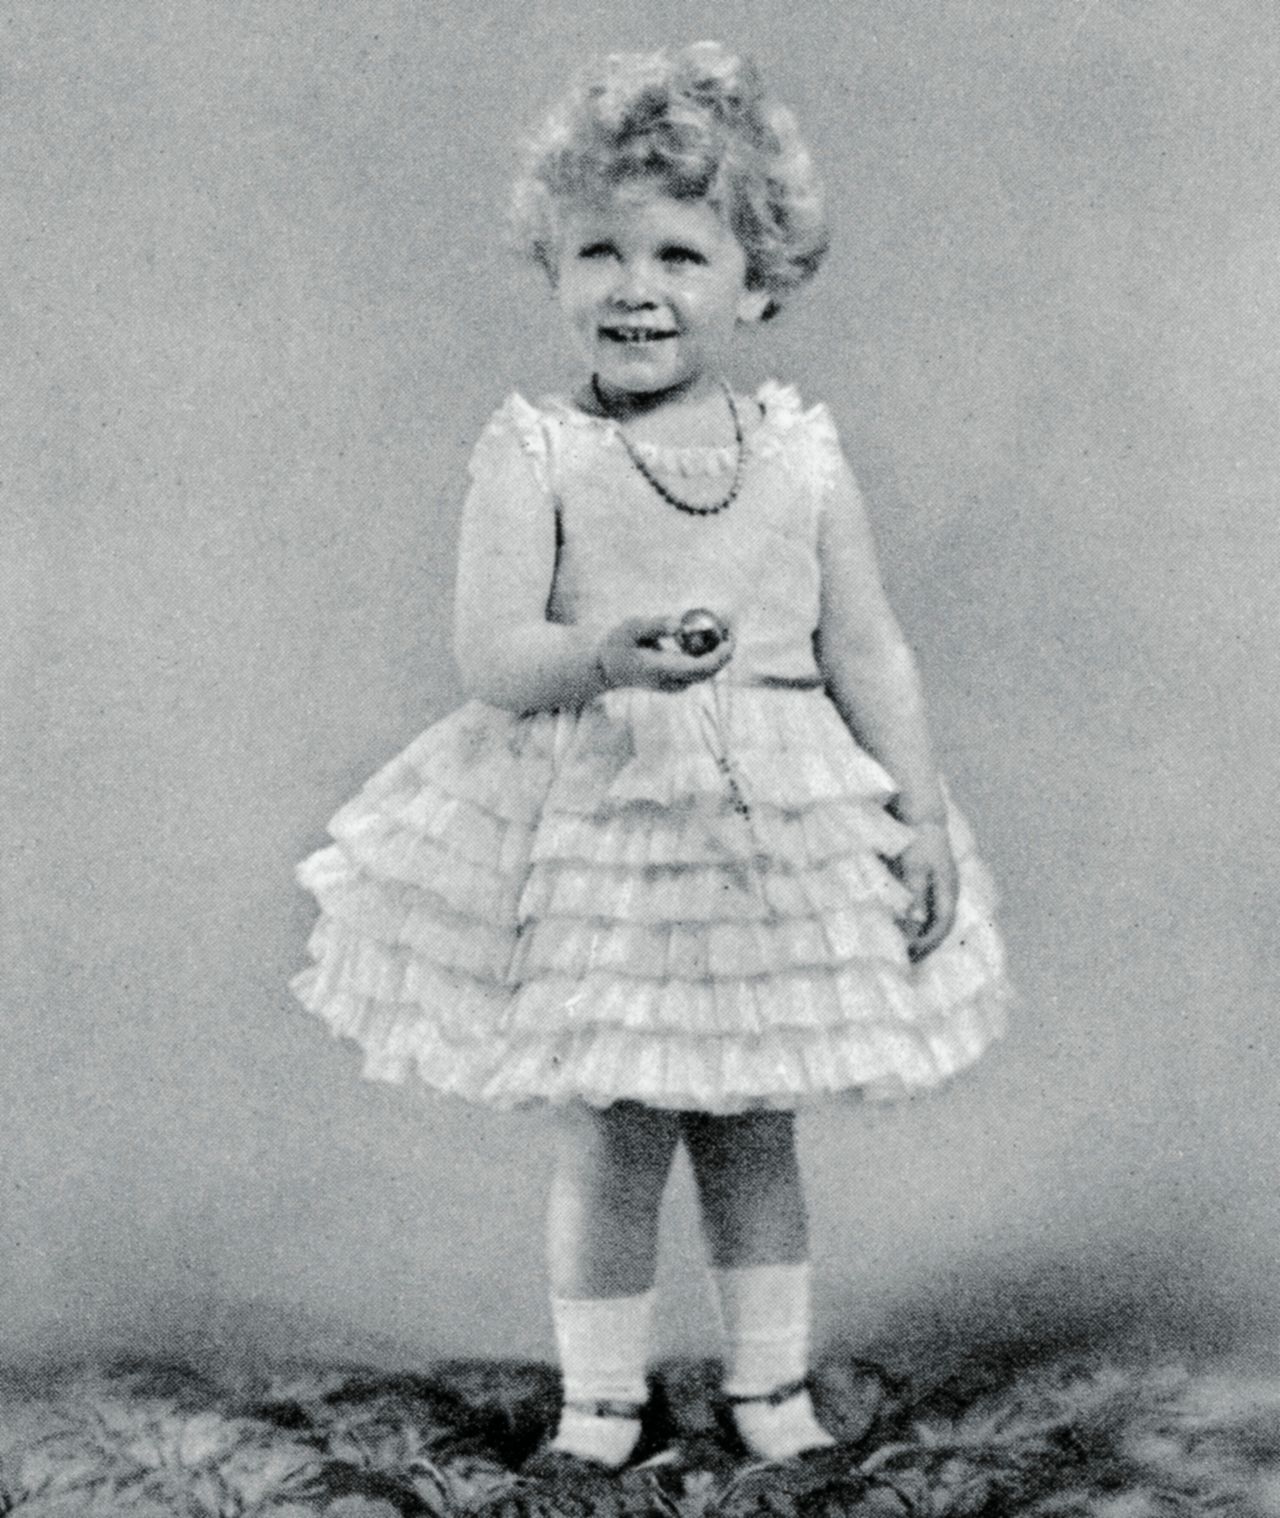 Princess Elizabeth at age 2 in 1928.